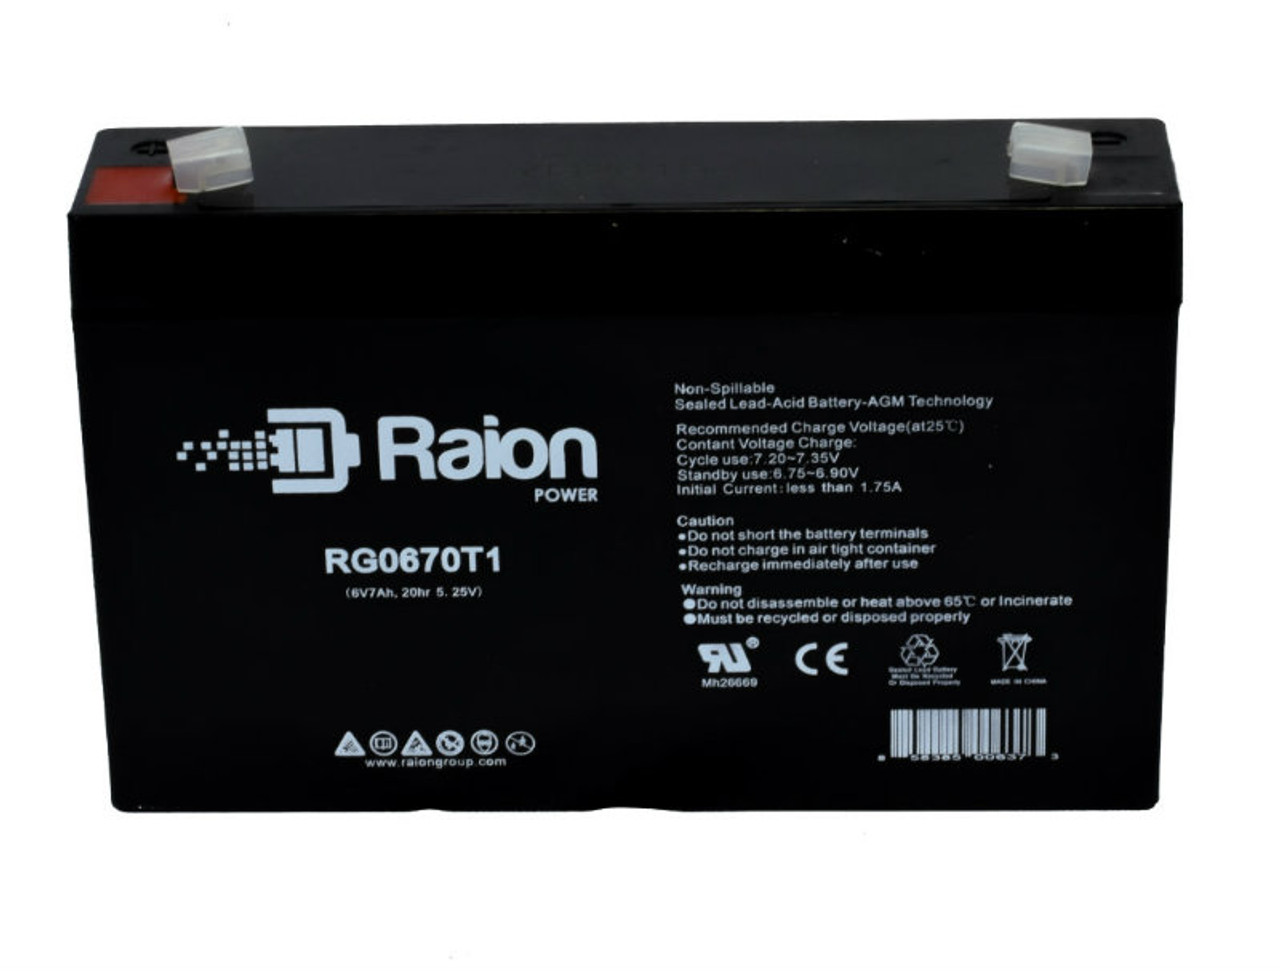 Raion Power RG0670T1 SLA Battery for BSB DC6-7.2 OEM Battery